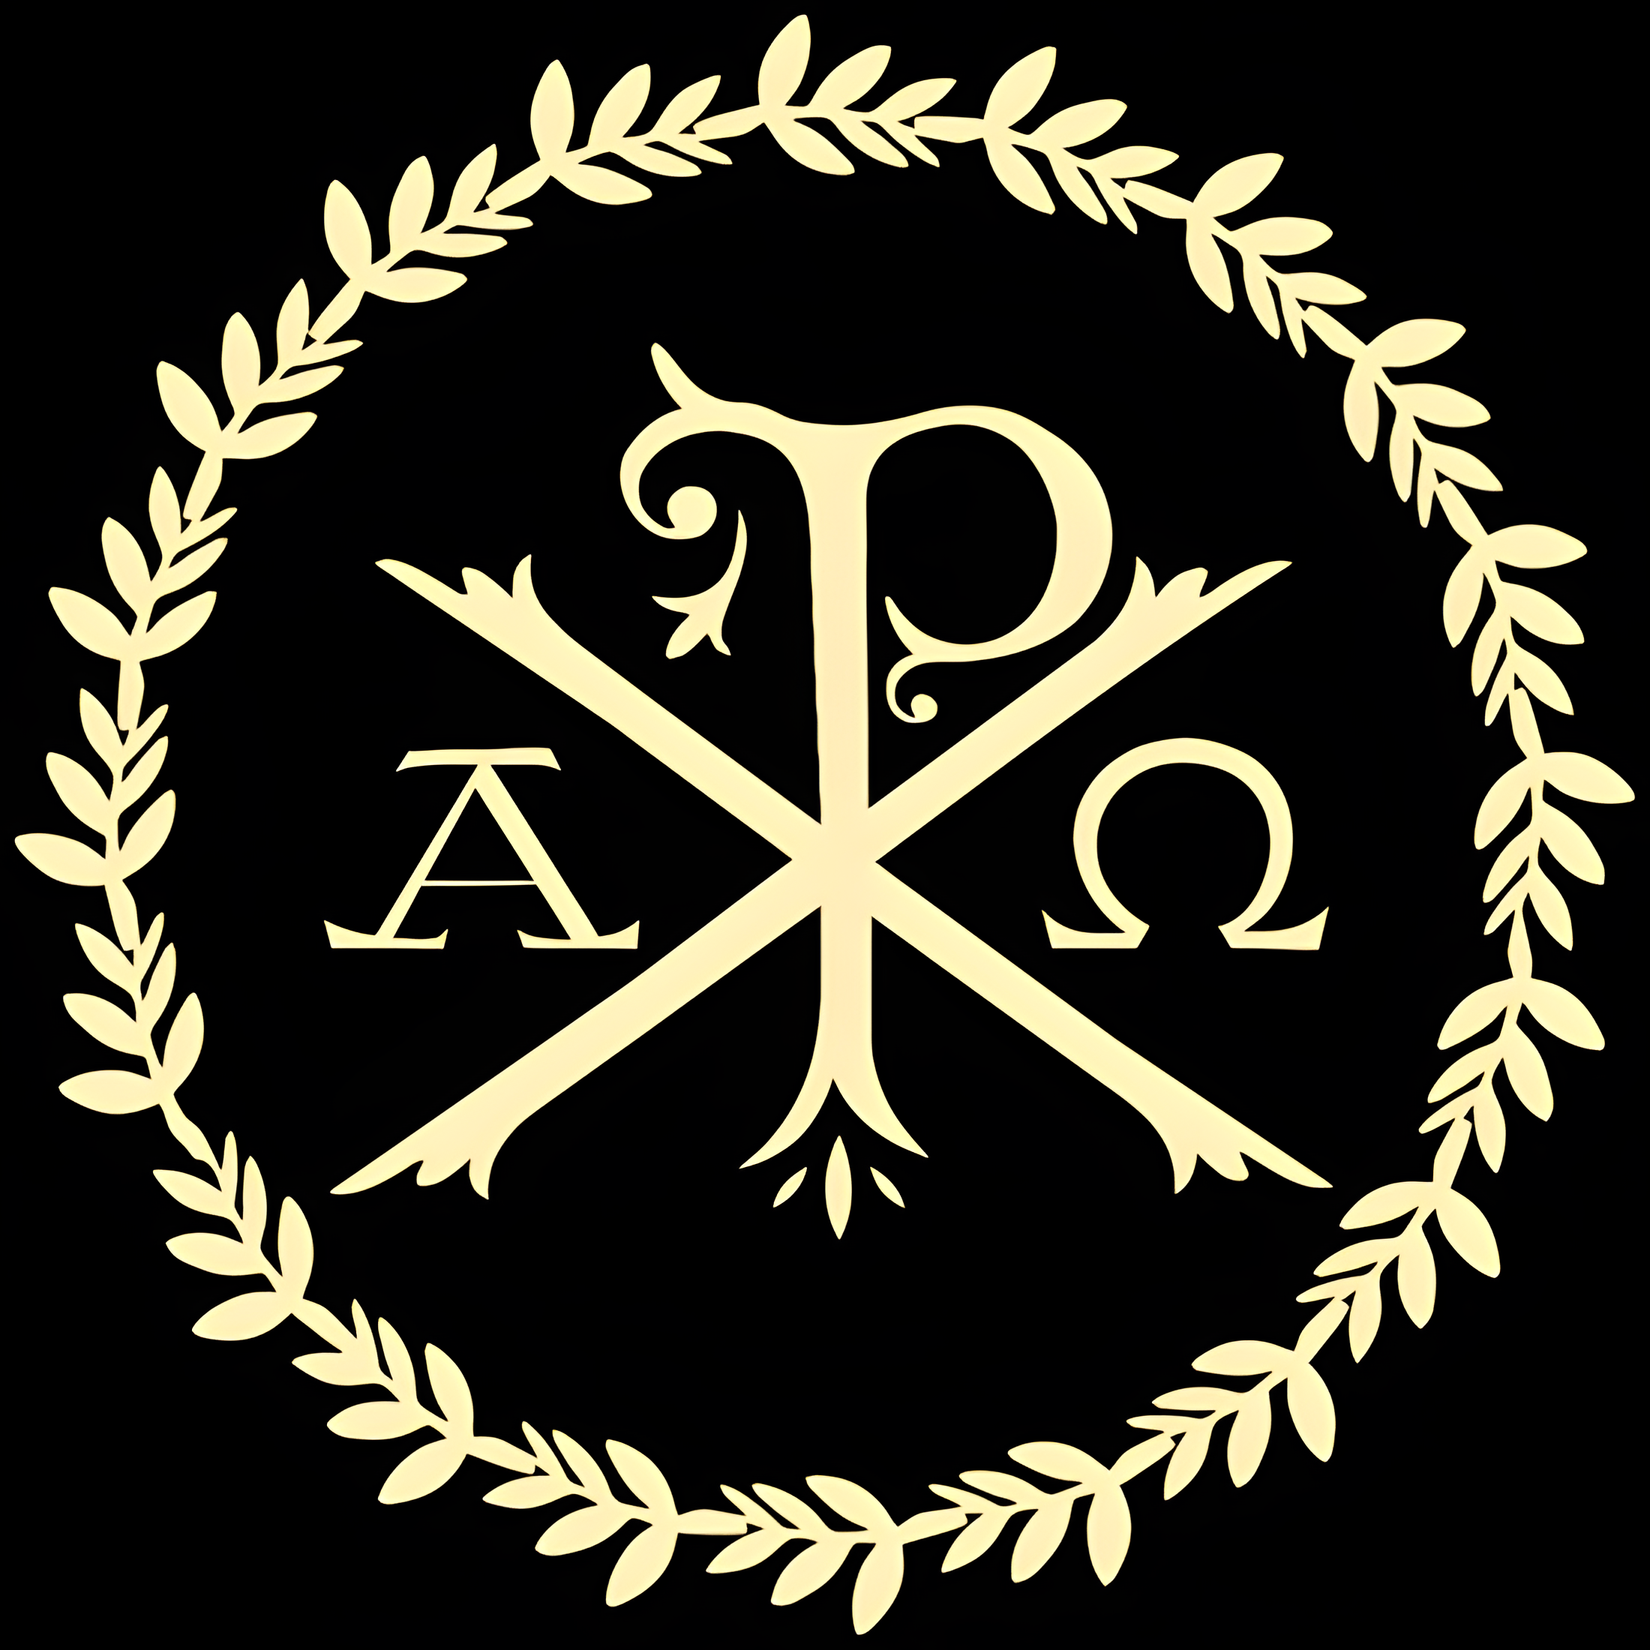 General 1650x1650 Chi rho Christianity catholic alpha omega Latin wreath black background